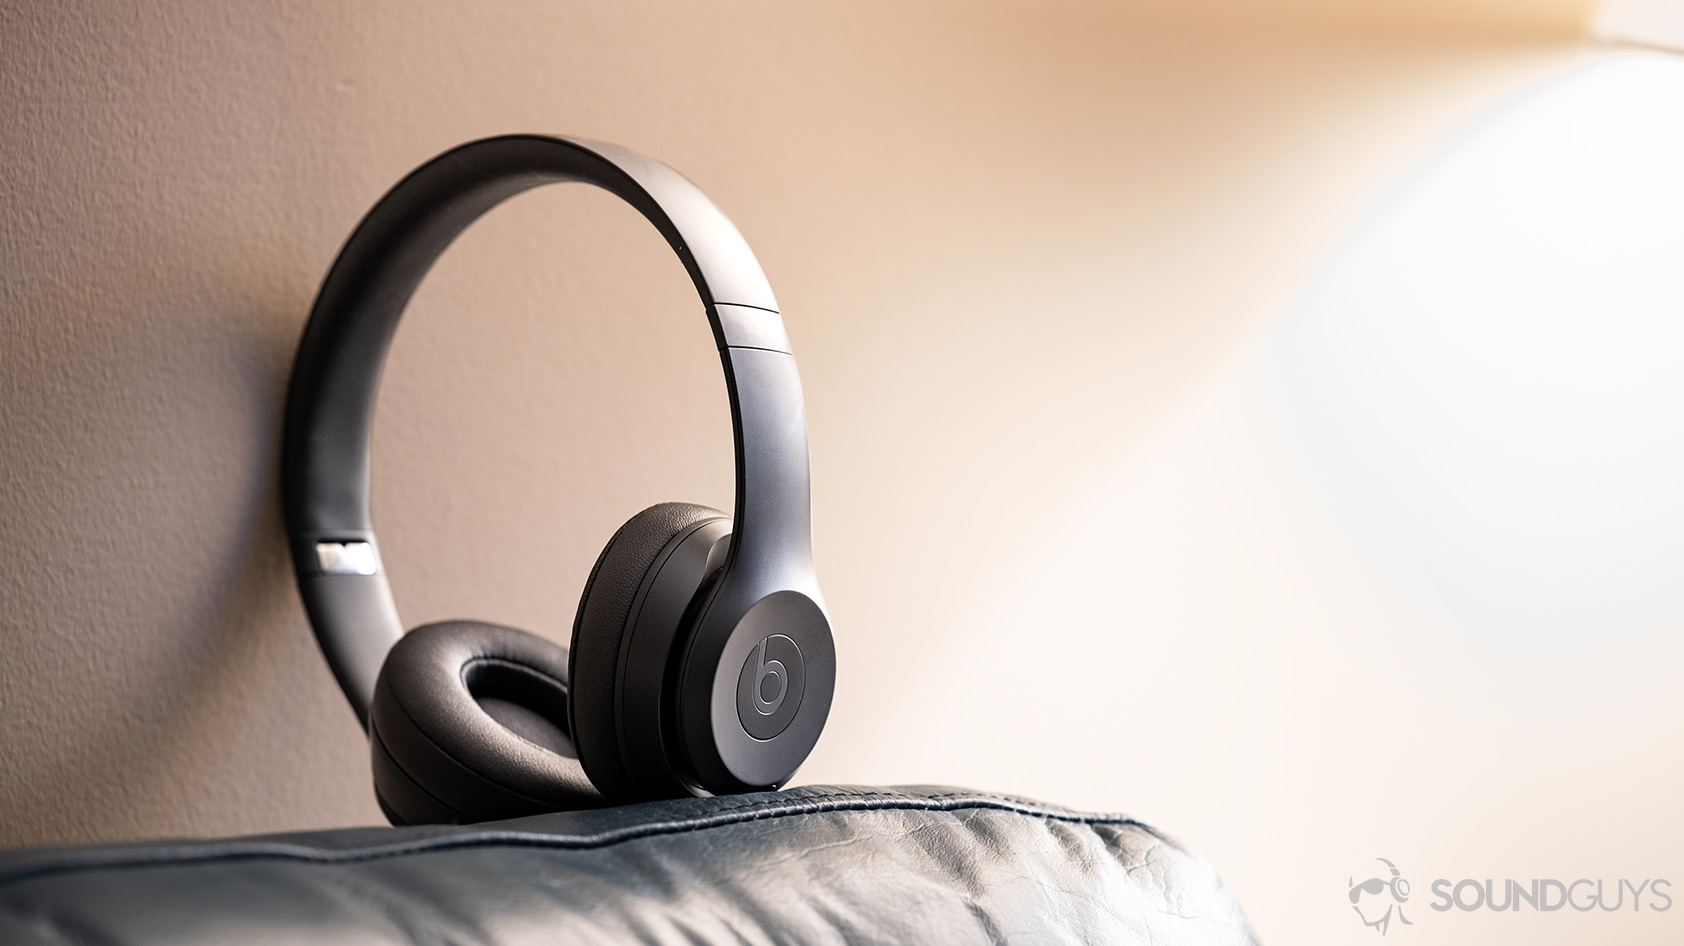 The Beats Solo3 Wireless headphones